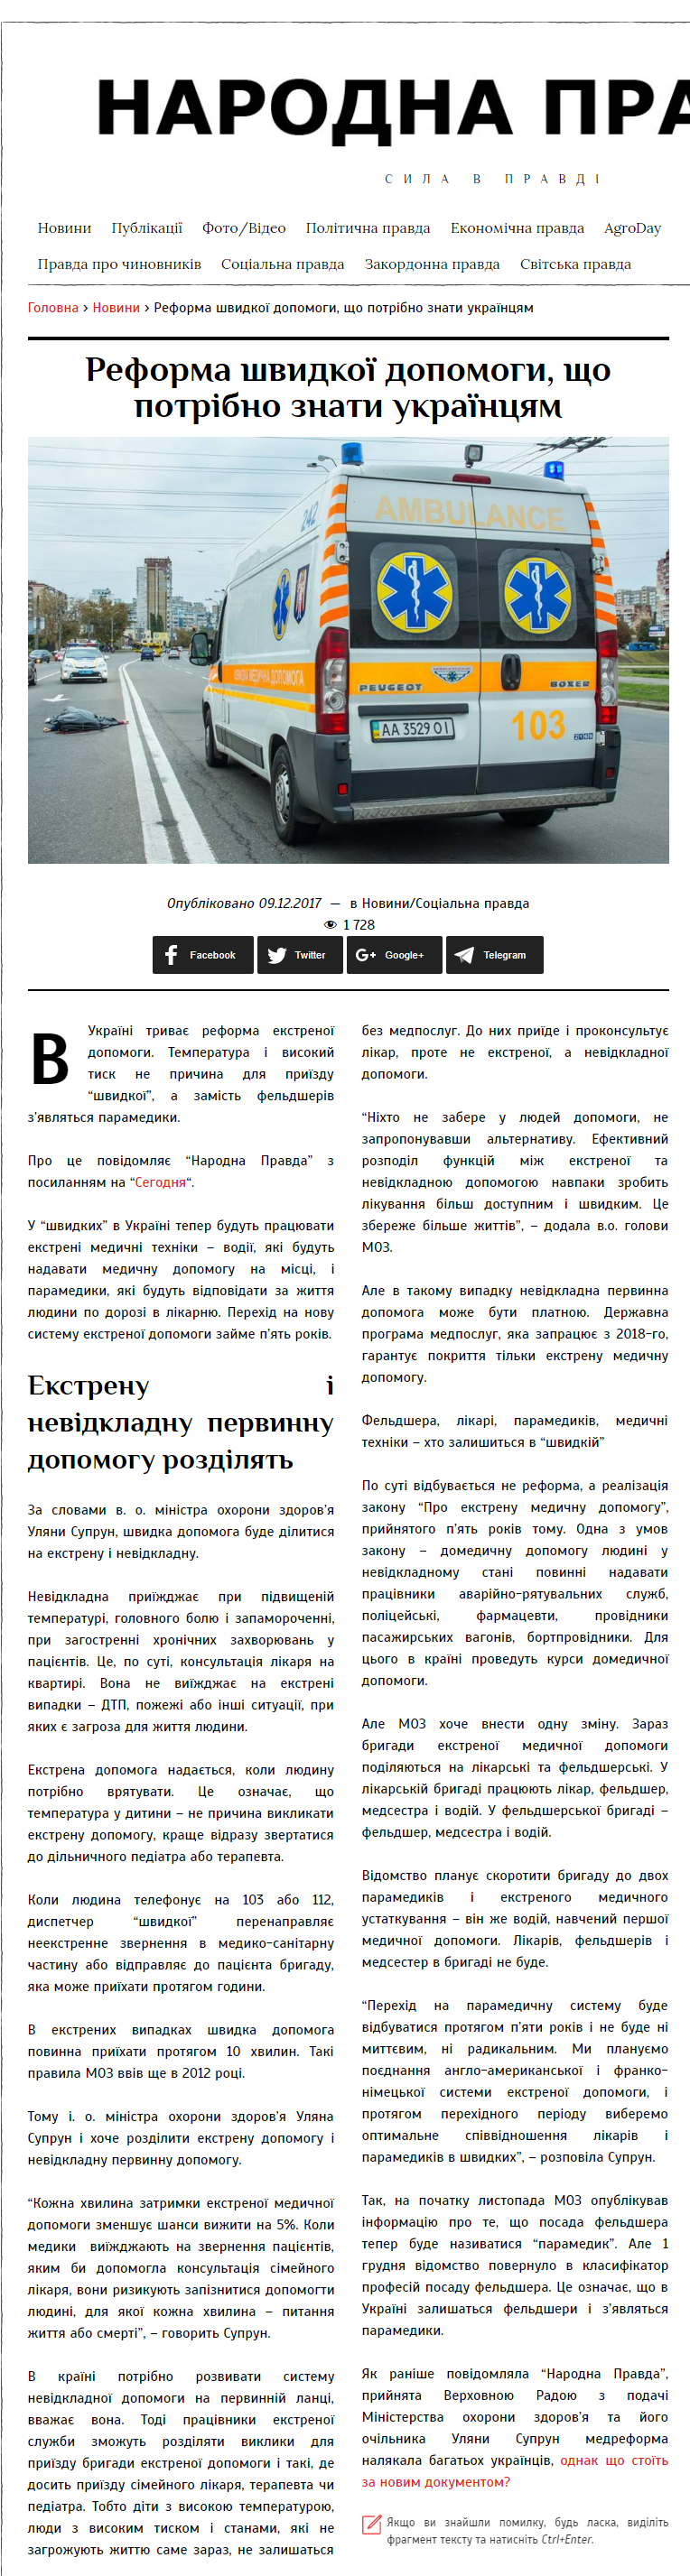 https://narodna-pravda.ua/2017/12/09/reforma-shvydkoyi-dopomogy-shho-potribno-znaty-ukrayintsyam/